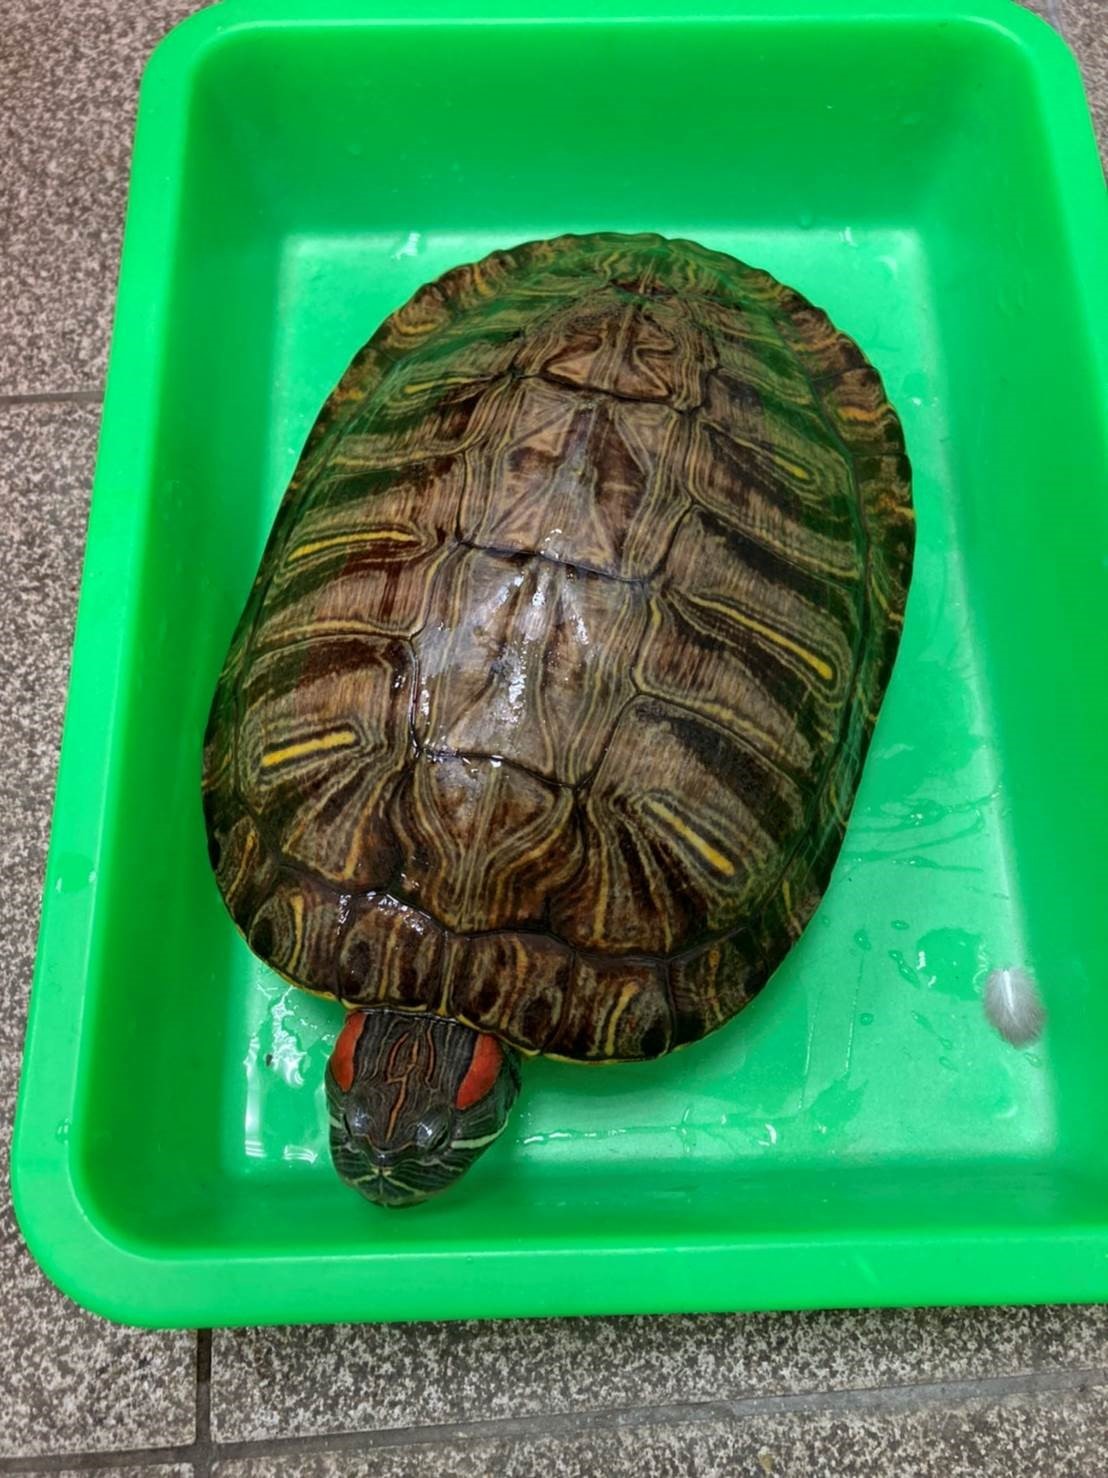 成年的巴西龜可達2.30公分，民眾於飼養時請注意應提供其適當的空間以為護動物福利